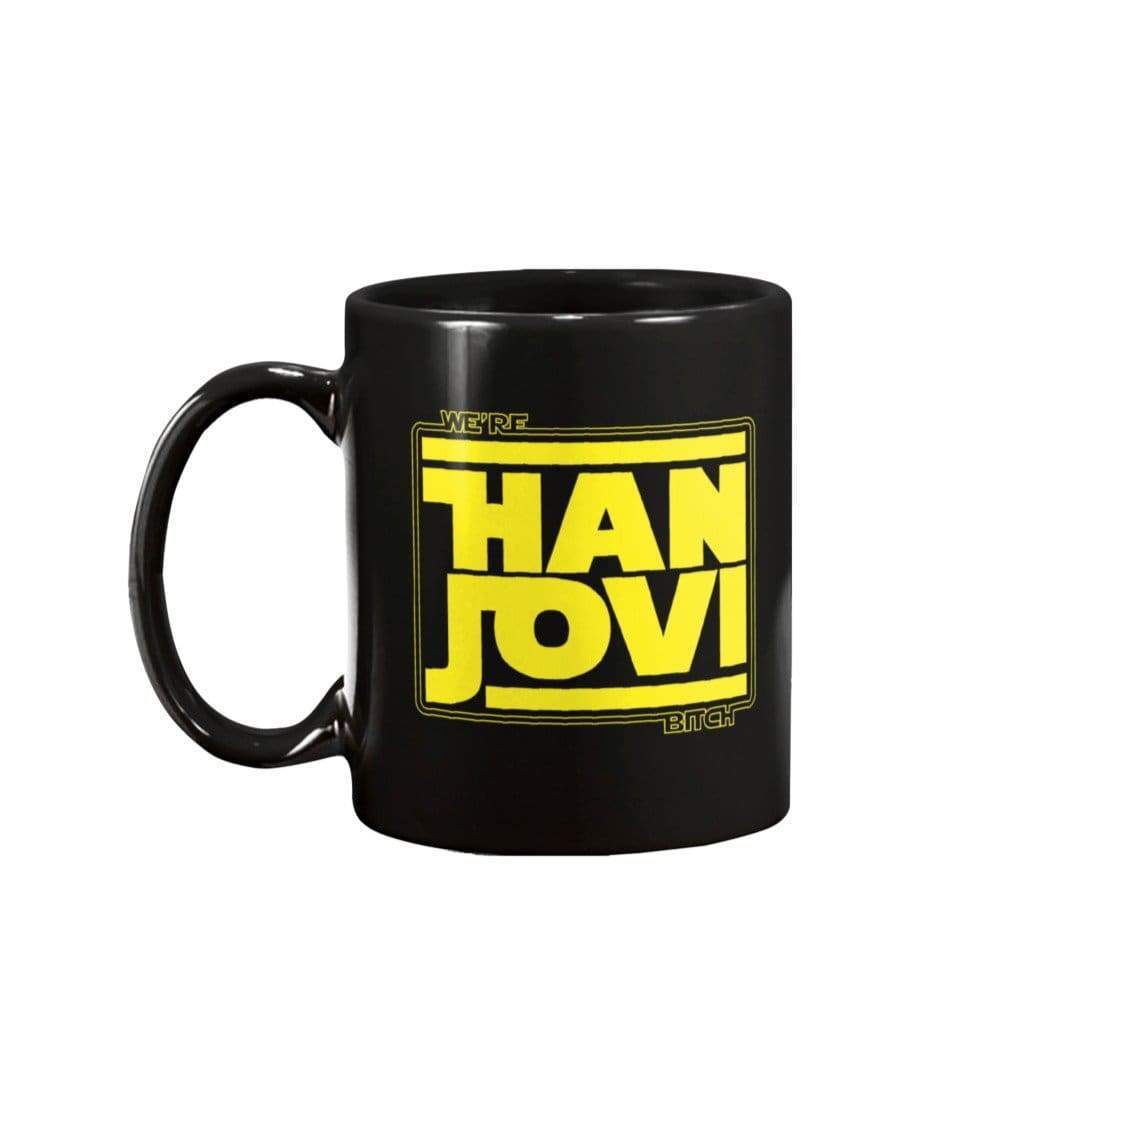 DSC We’re Han Jovi 11oz Coffee Mug - Black / 11OZ - Mugs